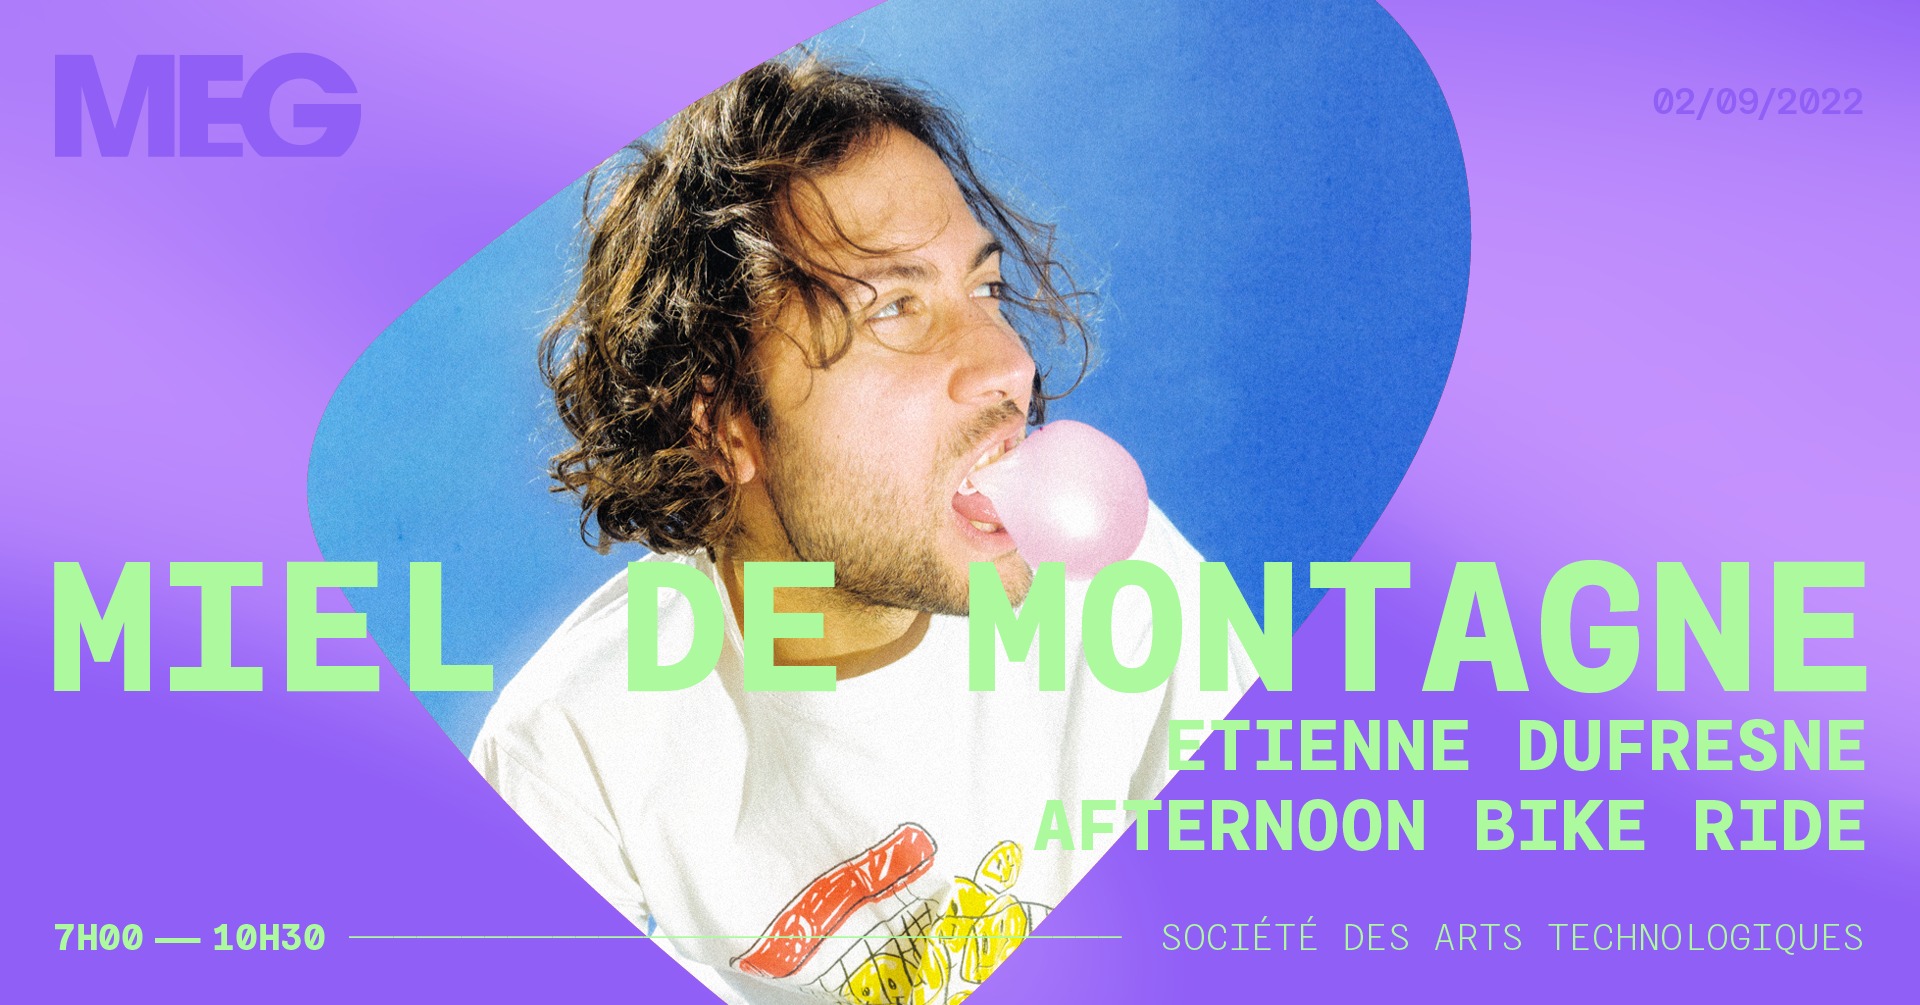 Festival MEG Miel de Montagne 2 Septembre 2022 Montreal, QC